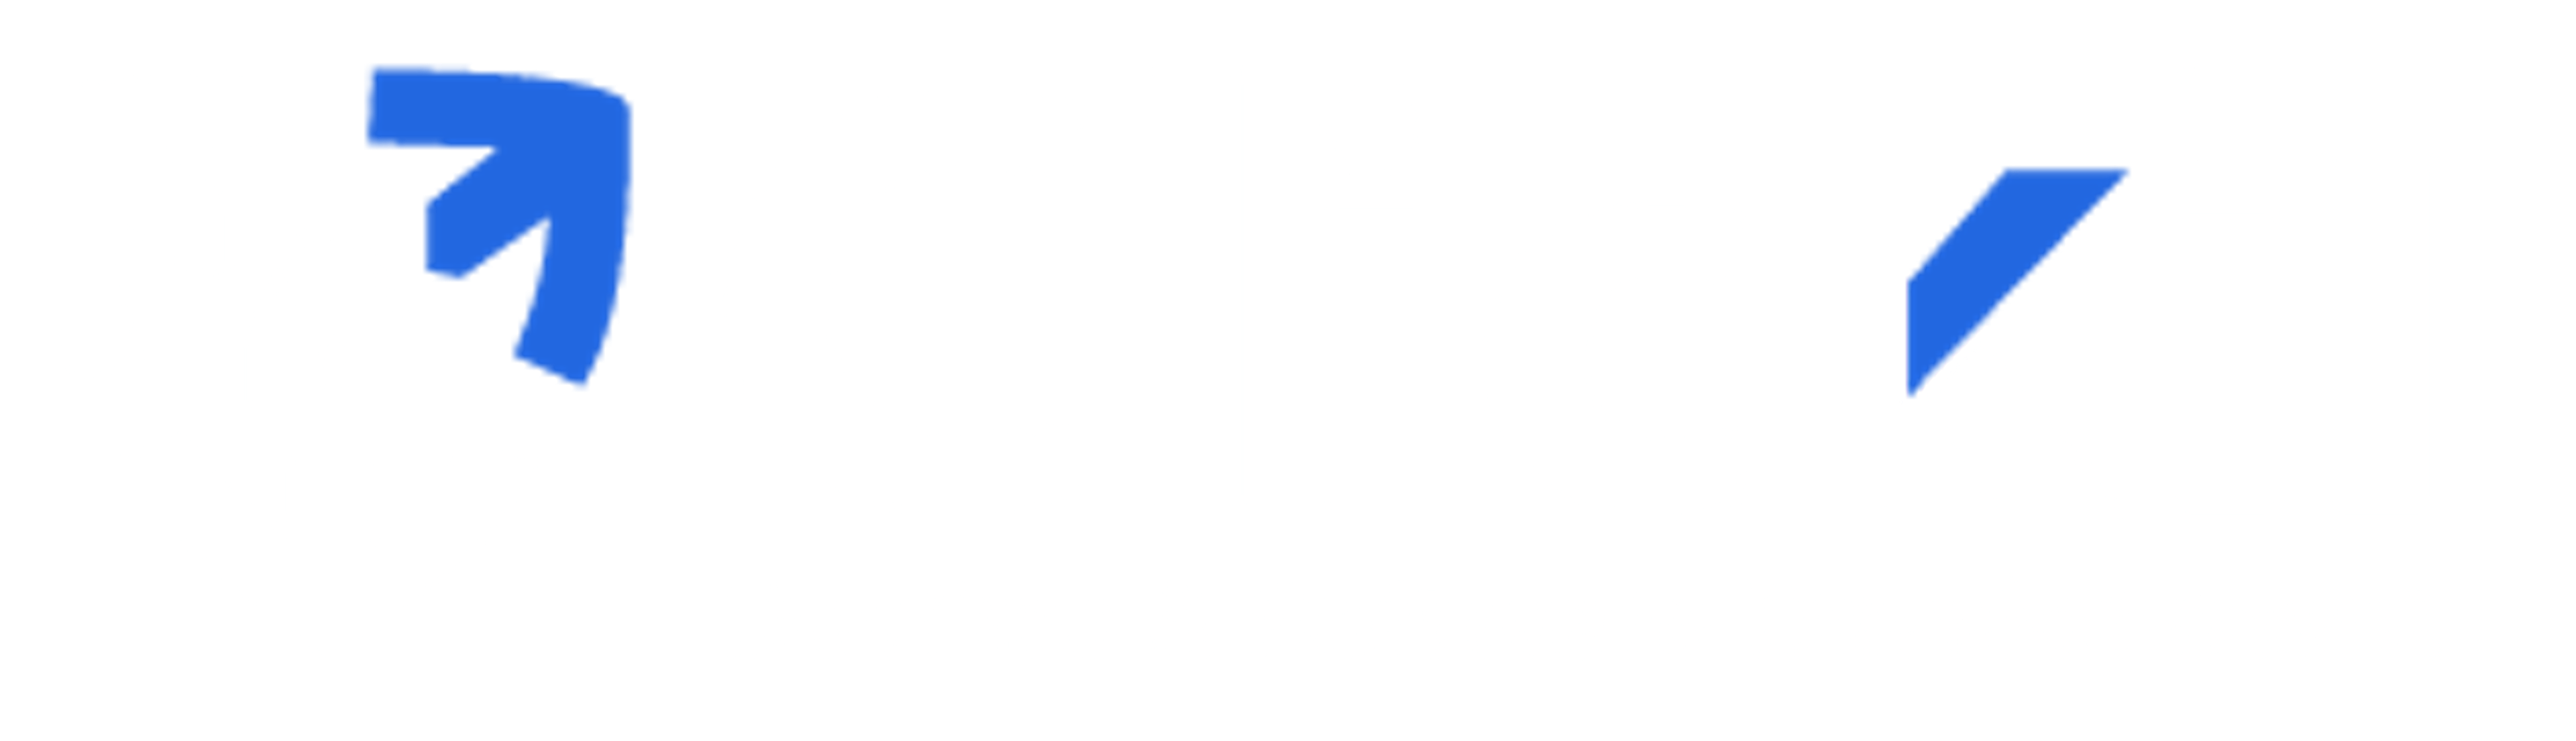 Clickittech.com